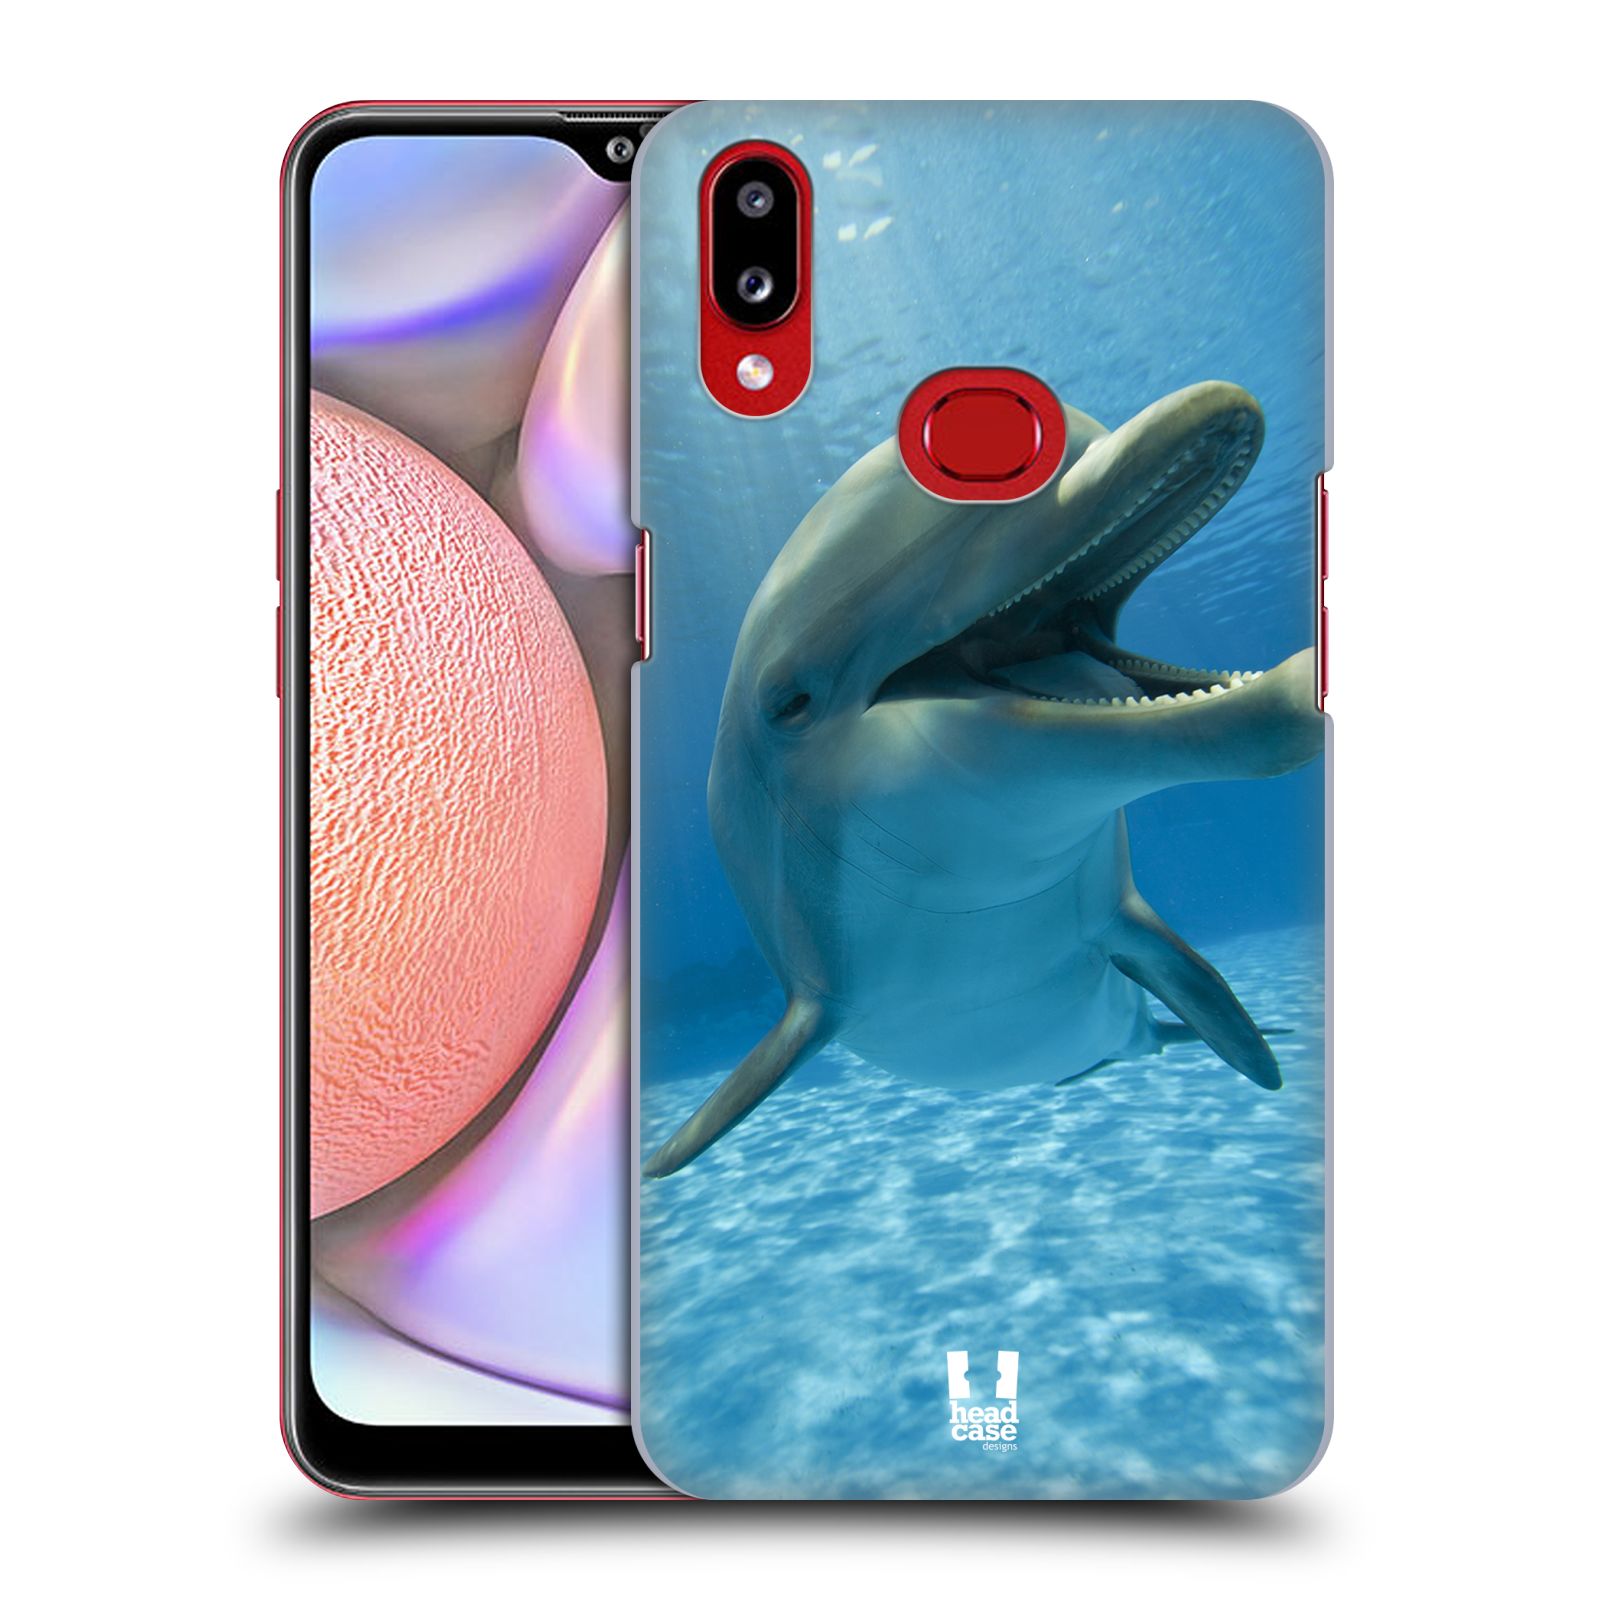 Zadní obal pro mobil Samsung Galaxy A10s - HEAD CASE - Svět zvířat delfín v moři